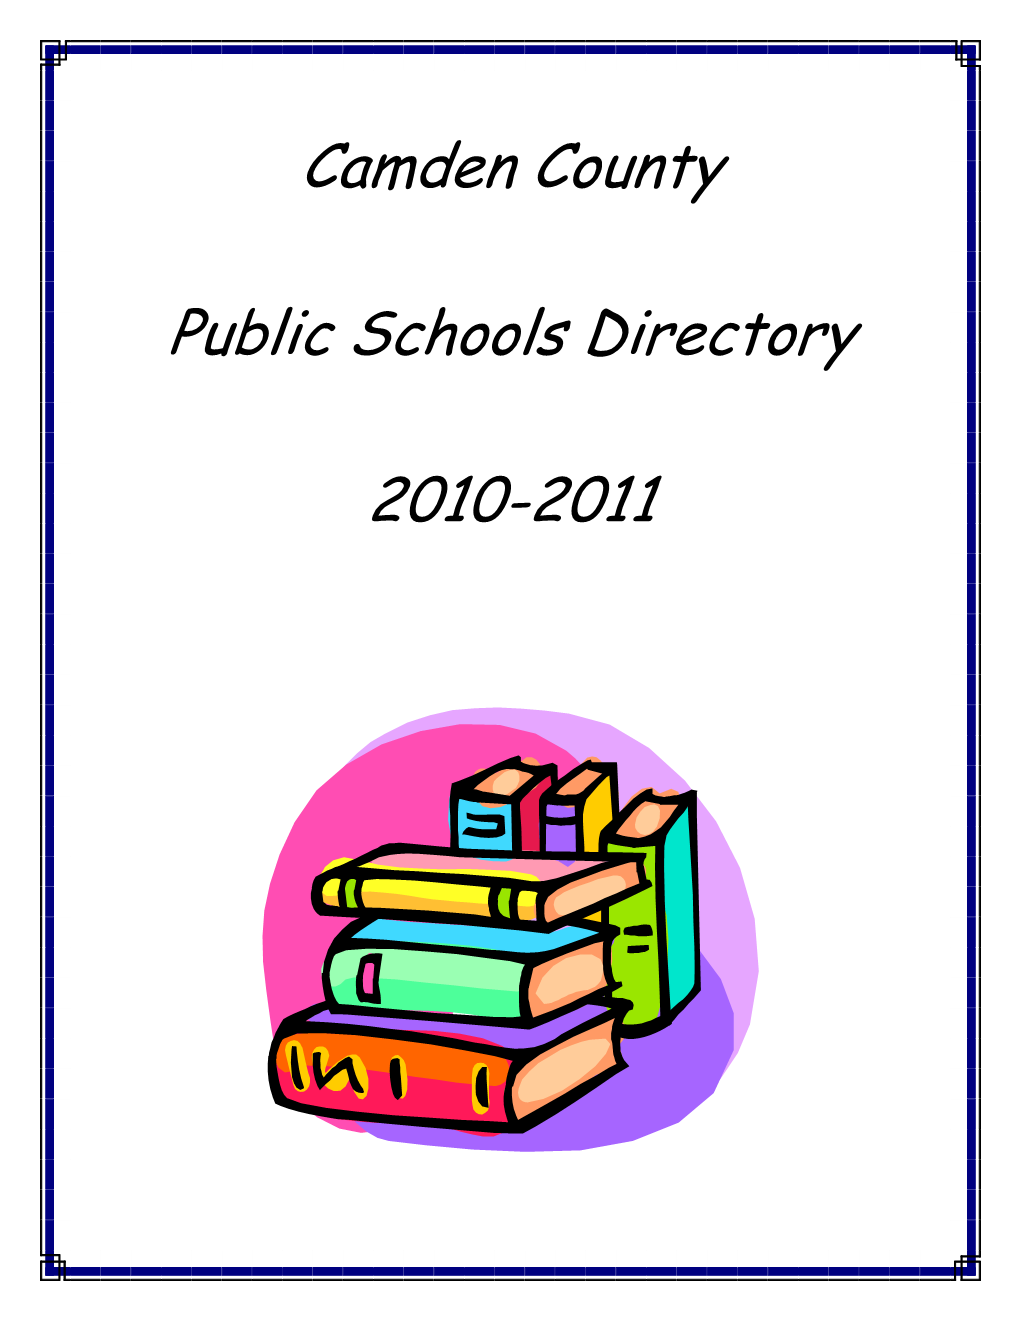 Camden County Public Schools Directory 2010-2011